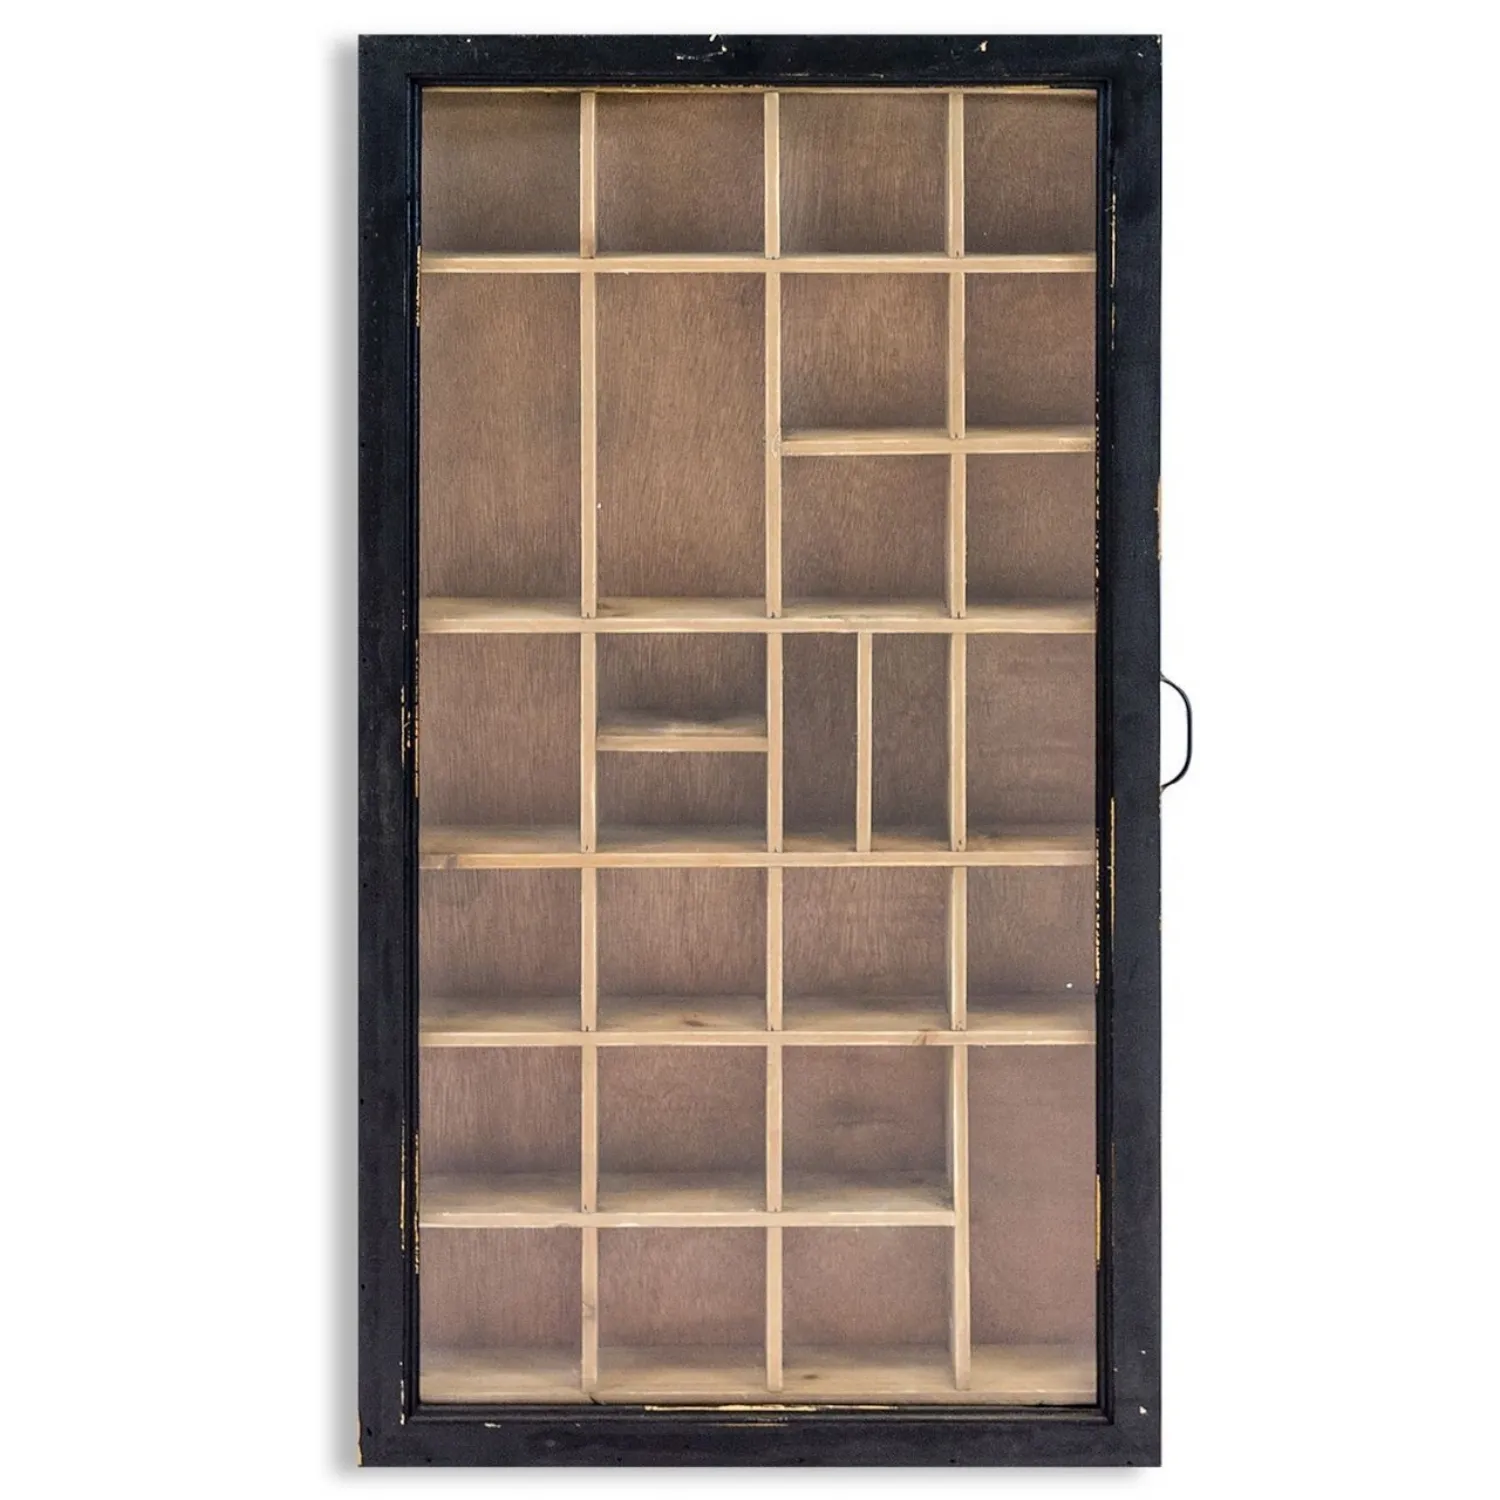 Antiqued Black Wooden Wall Display Cabinet Glass Door